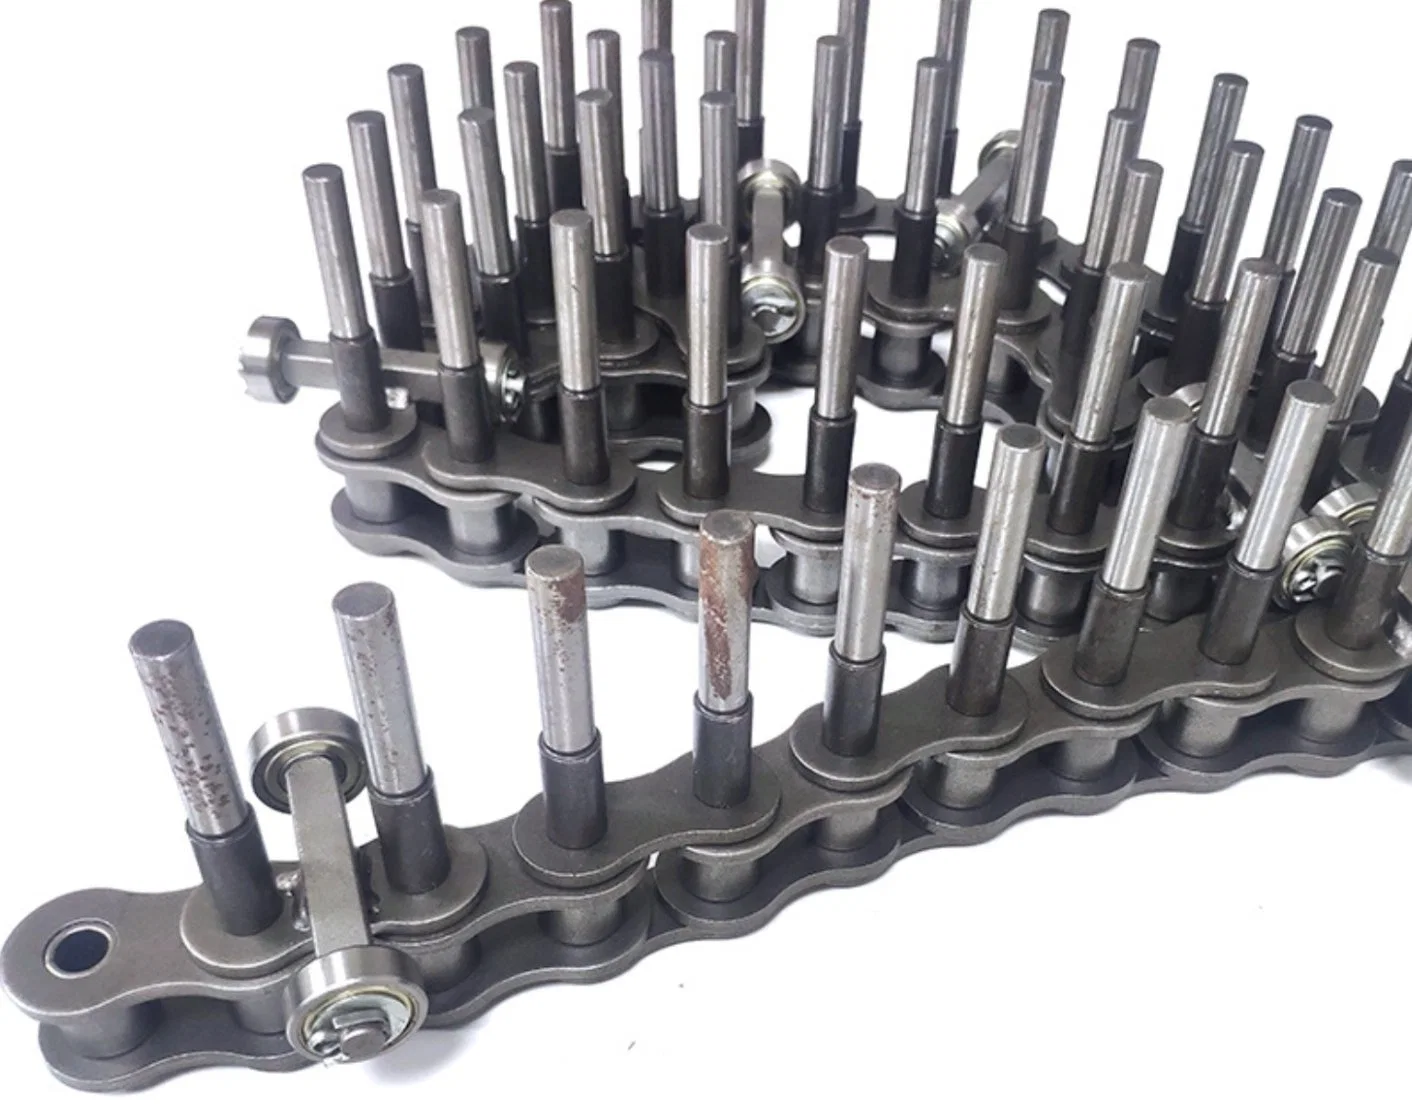 Rodillo de acero inoxidable industrial de la cadena de transmisión de la cadena de moto transportador de cadena de metal para maquinaria